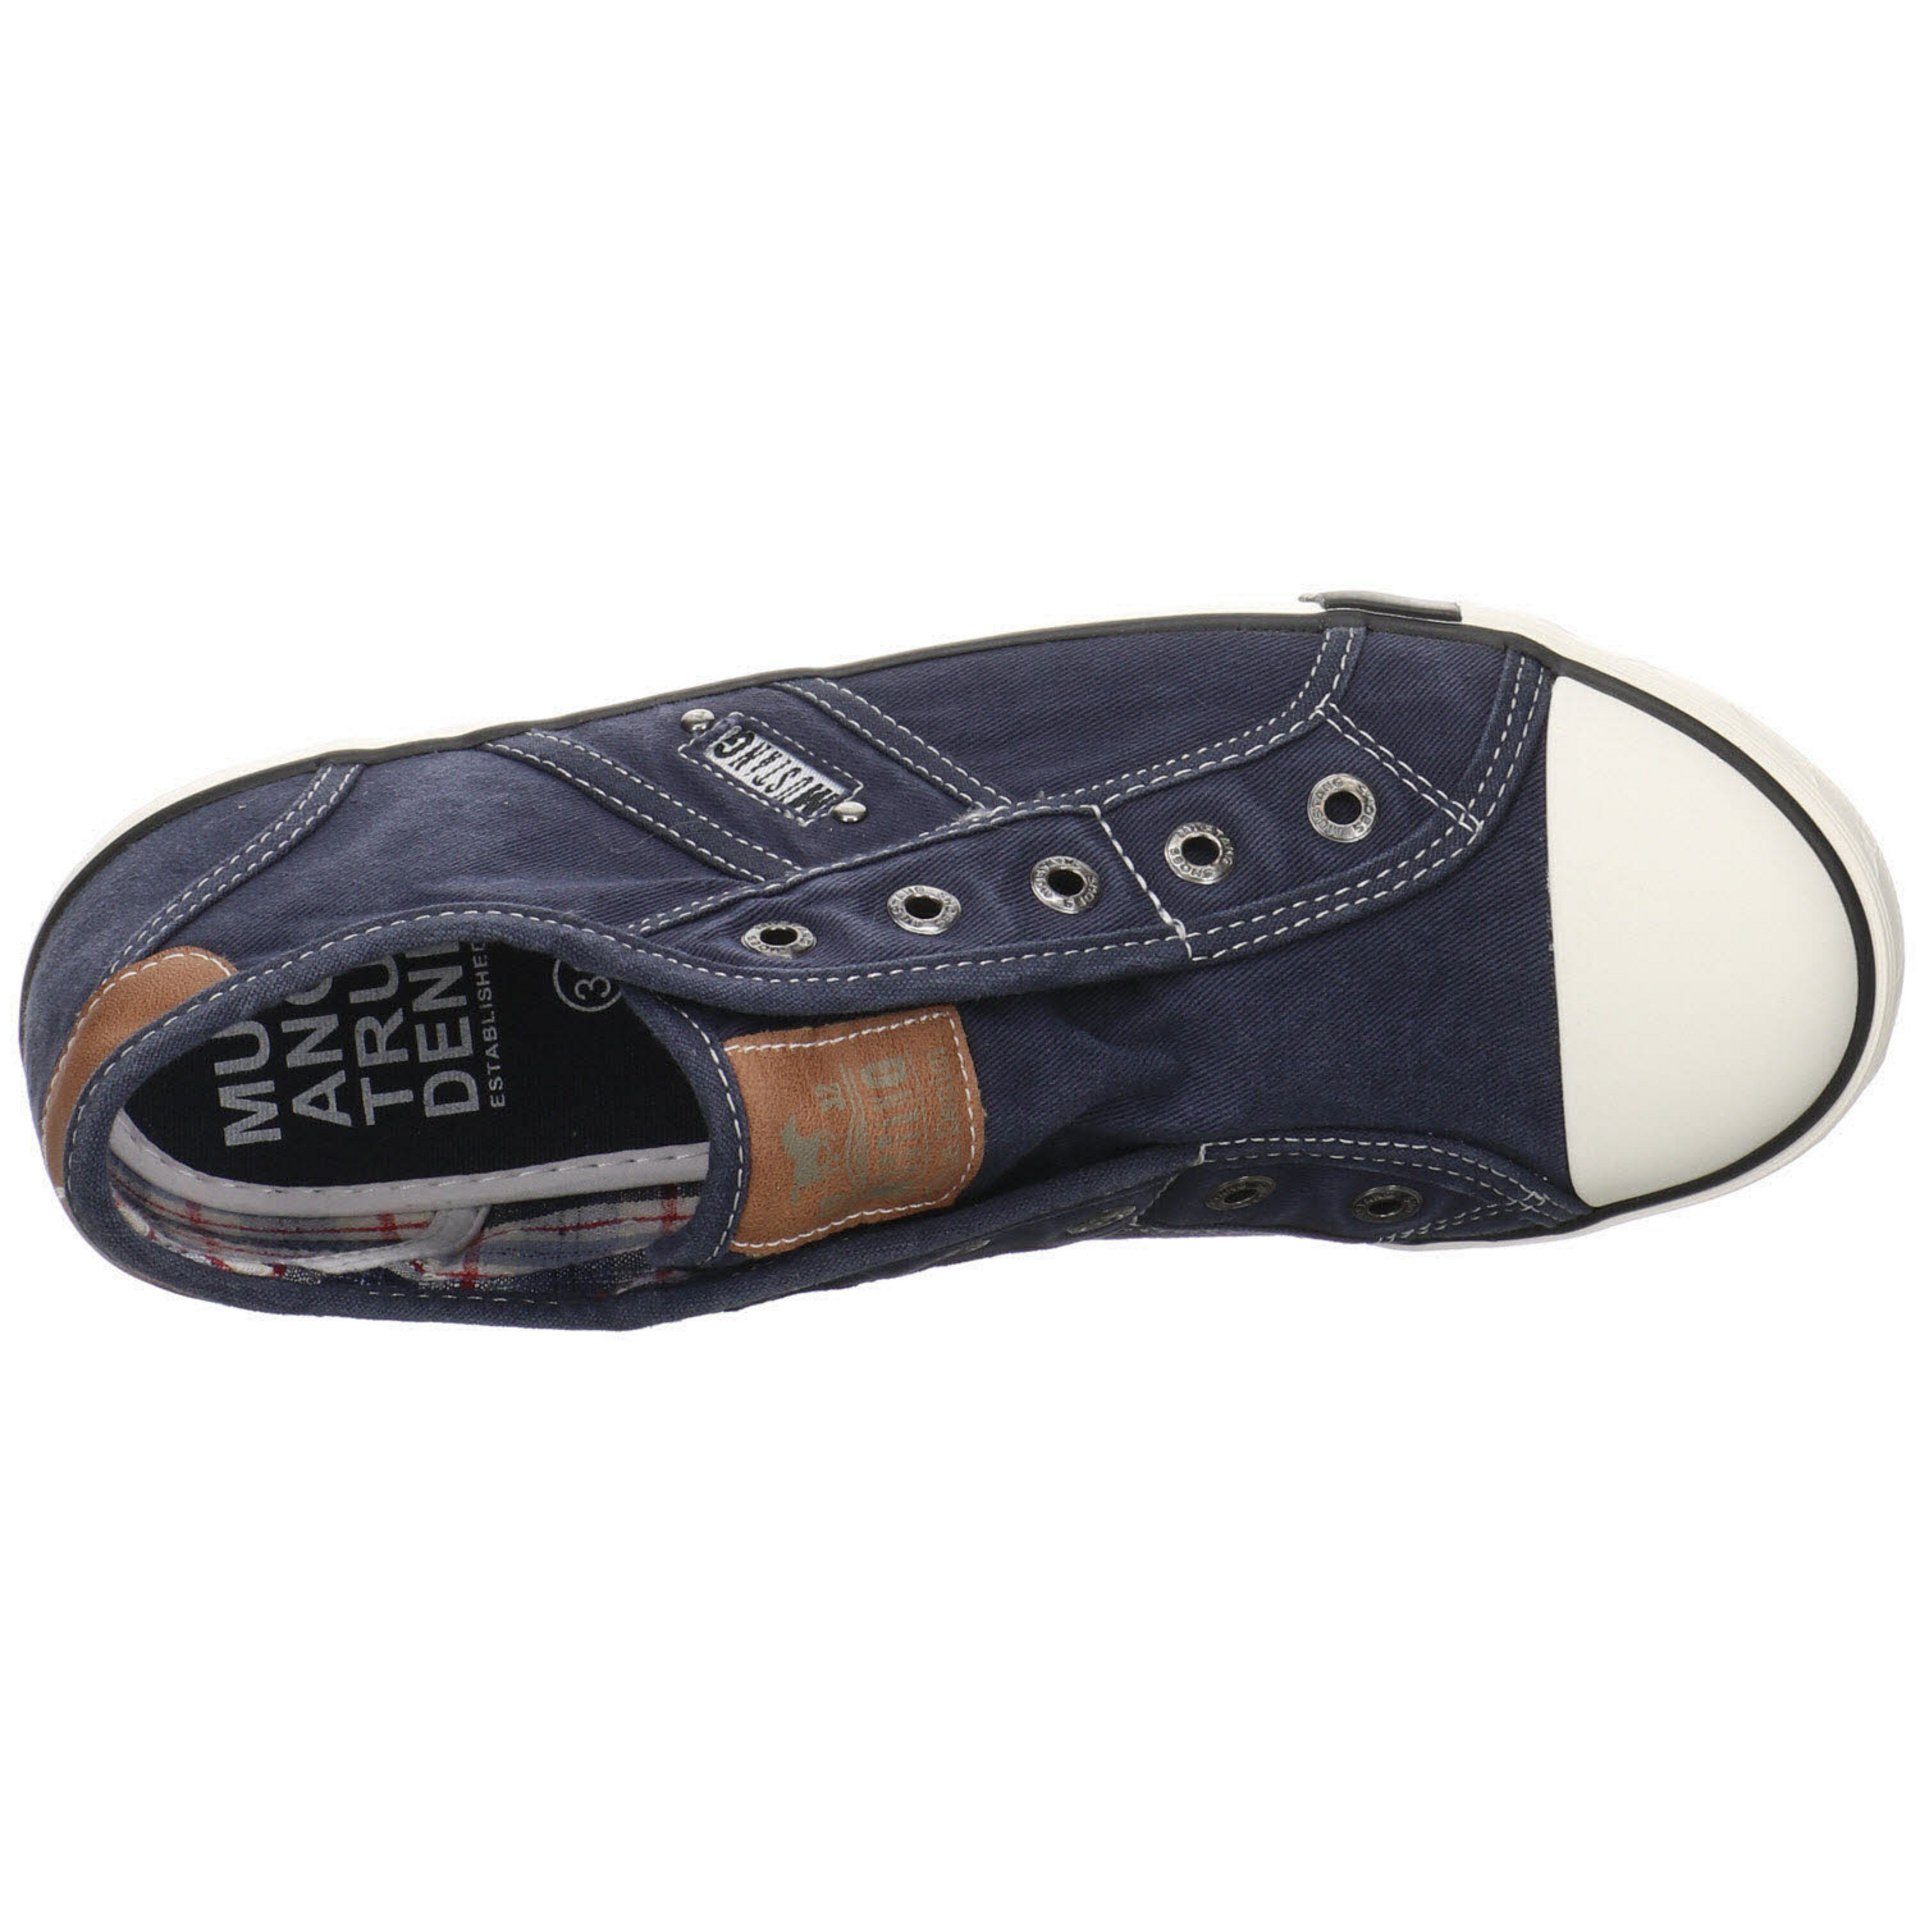 Slipper Shoes Slip-On Mustang Damen Sneaker Slip-Ons (13101733) Freizeit Schuhe Sneaker Synthetikkombination dunkelblau